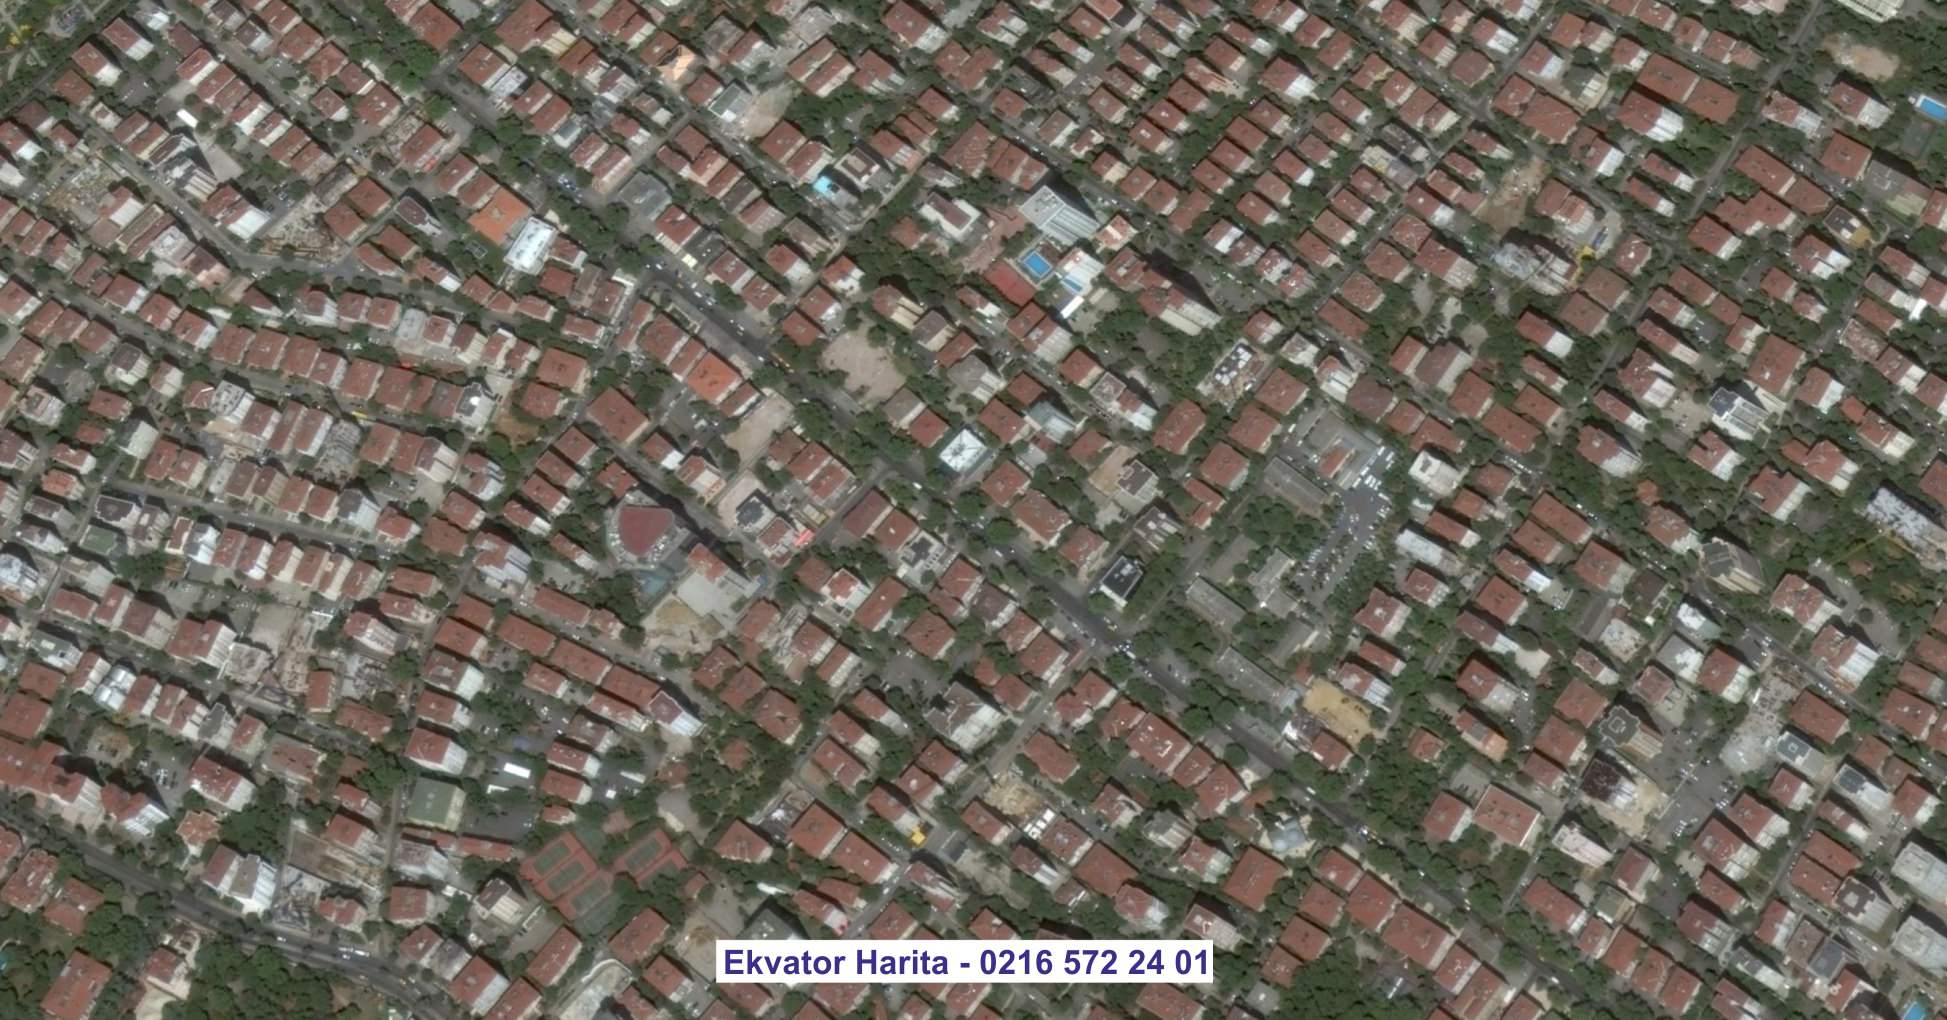 Tuzla Uydu Görüntüsü Örnek Fotoğrafı